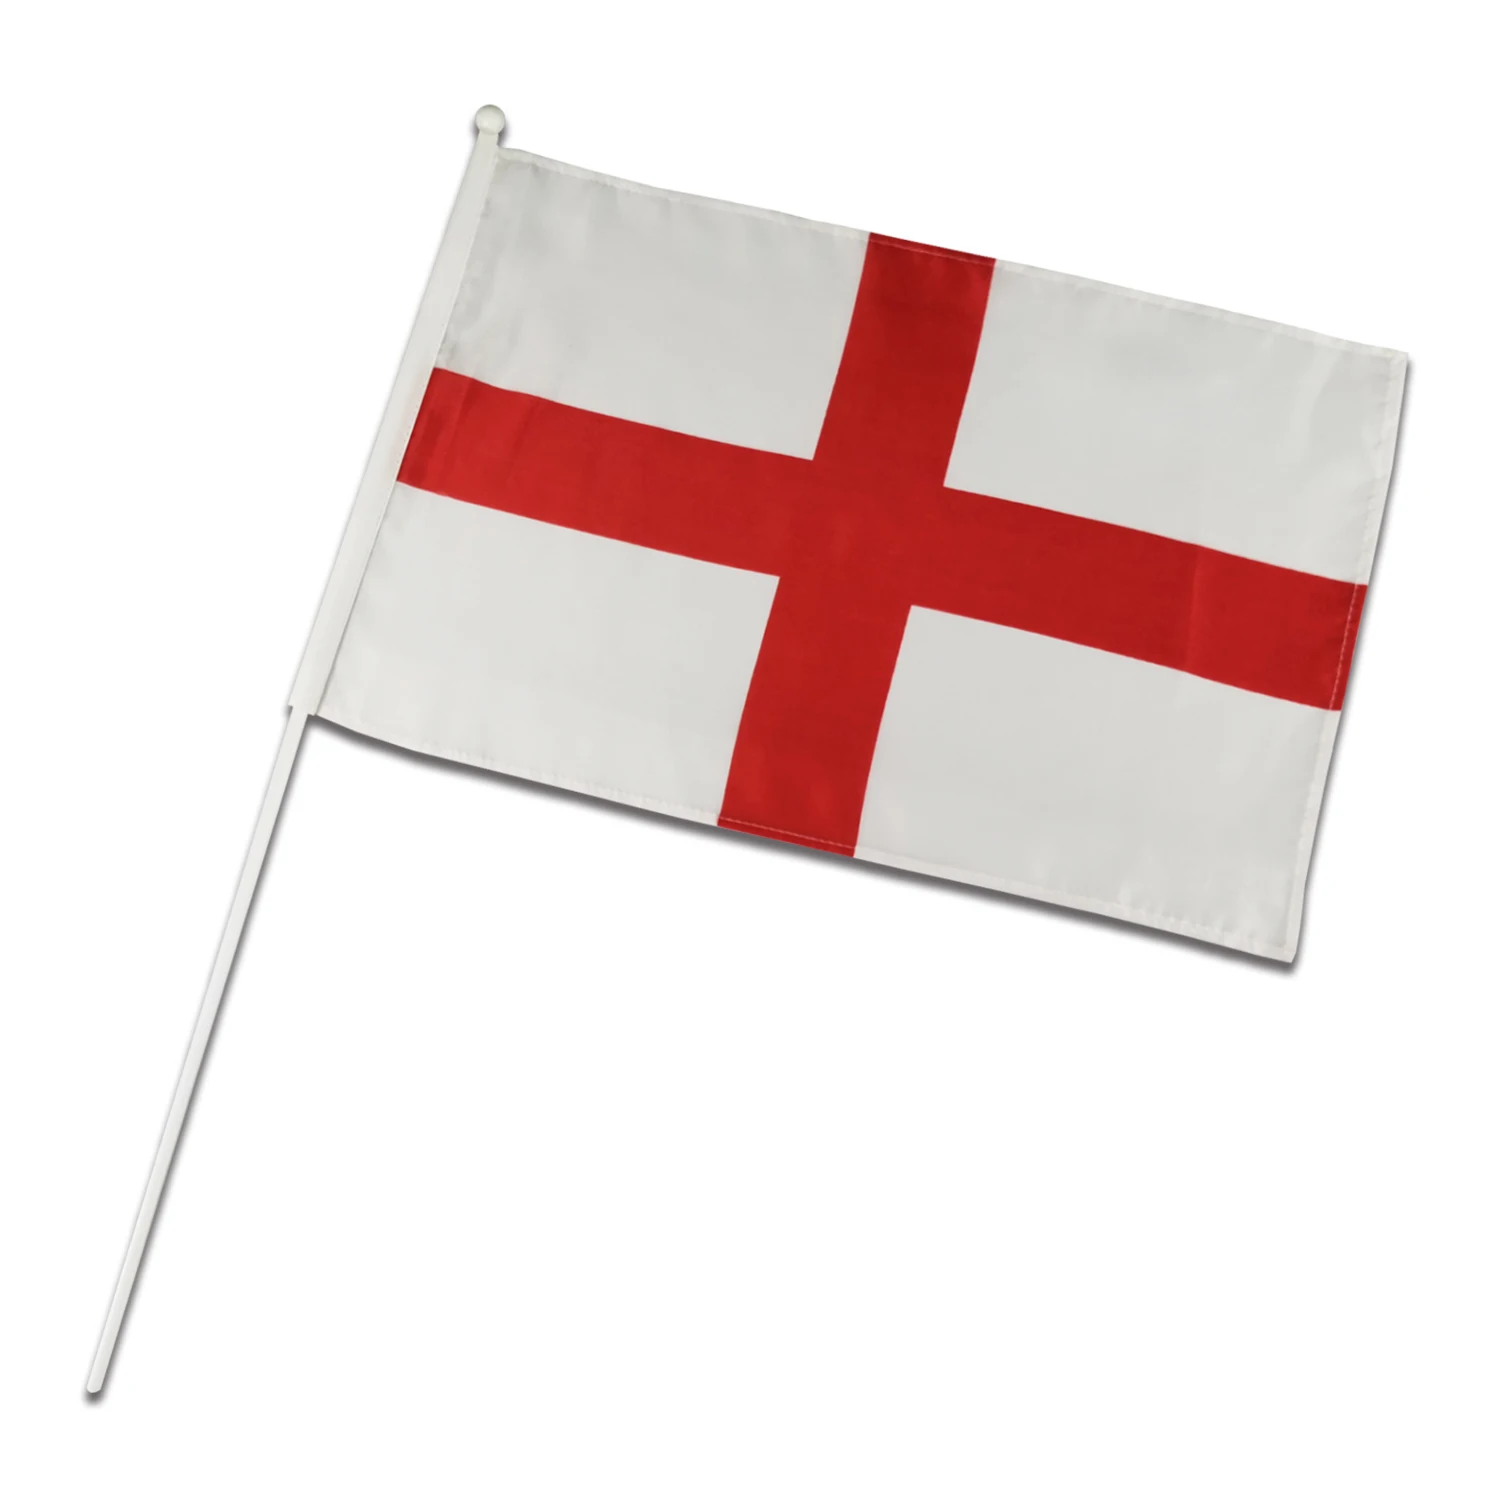 Cờ Nước Anh Tùy Chỉnh Biểu Ngữ: Thiết kế và in ấn cờ Nước Anh của riêng bạn - hãy tạo ra một chiếc cờ độc đáo tuyệt vời chỉ dành riêng cho bạn. Với nhiều lựa chọn màu sắc và chất liệu, chiếc cờ Anh của bạn sẽ đảm bảo làm nổi bật giai điệu của bất kỳ sự kiện nào.